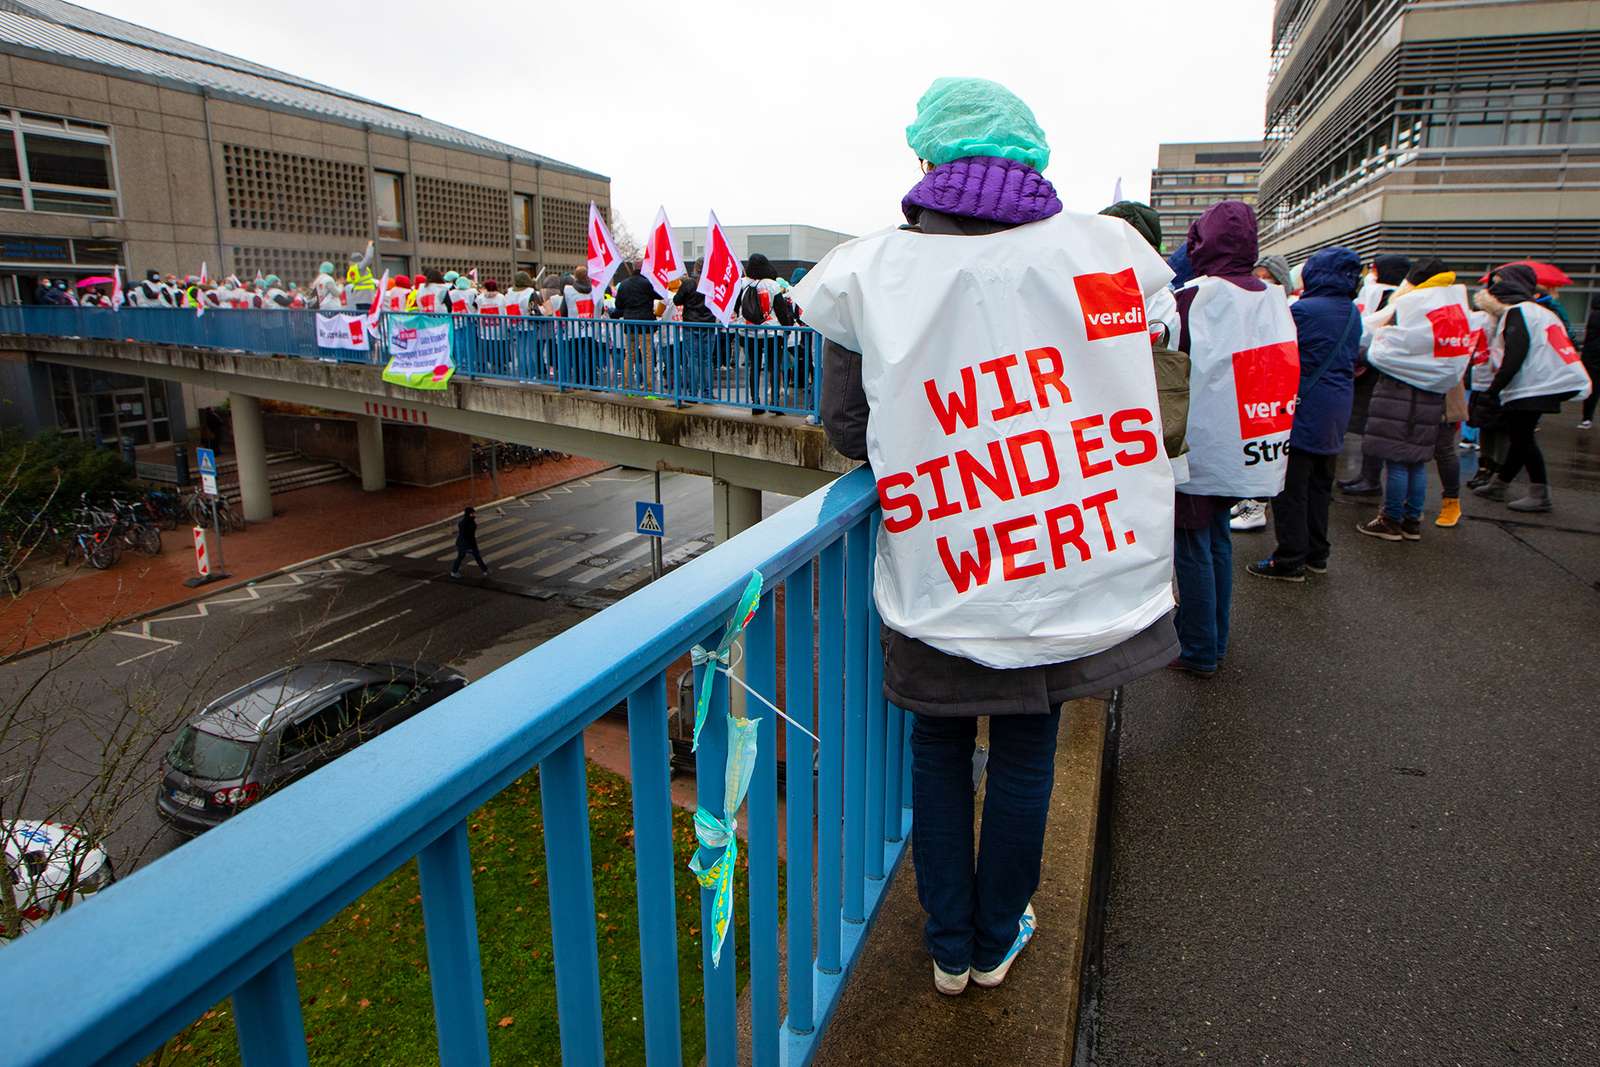 Aufgerufen zu der Streikaktion an der MHH hat die Gewerkschaft ver.di. Quelle: Karin Kaiser/MHH (Archiv)